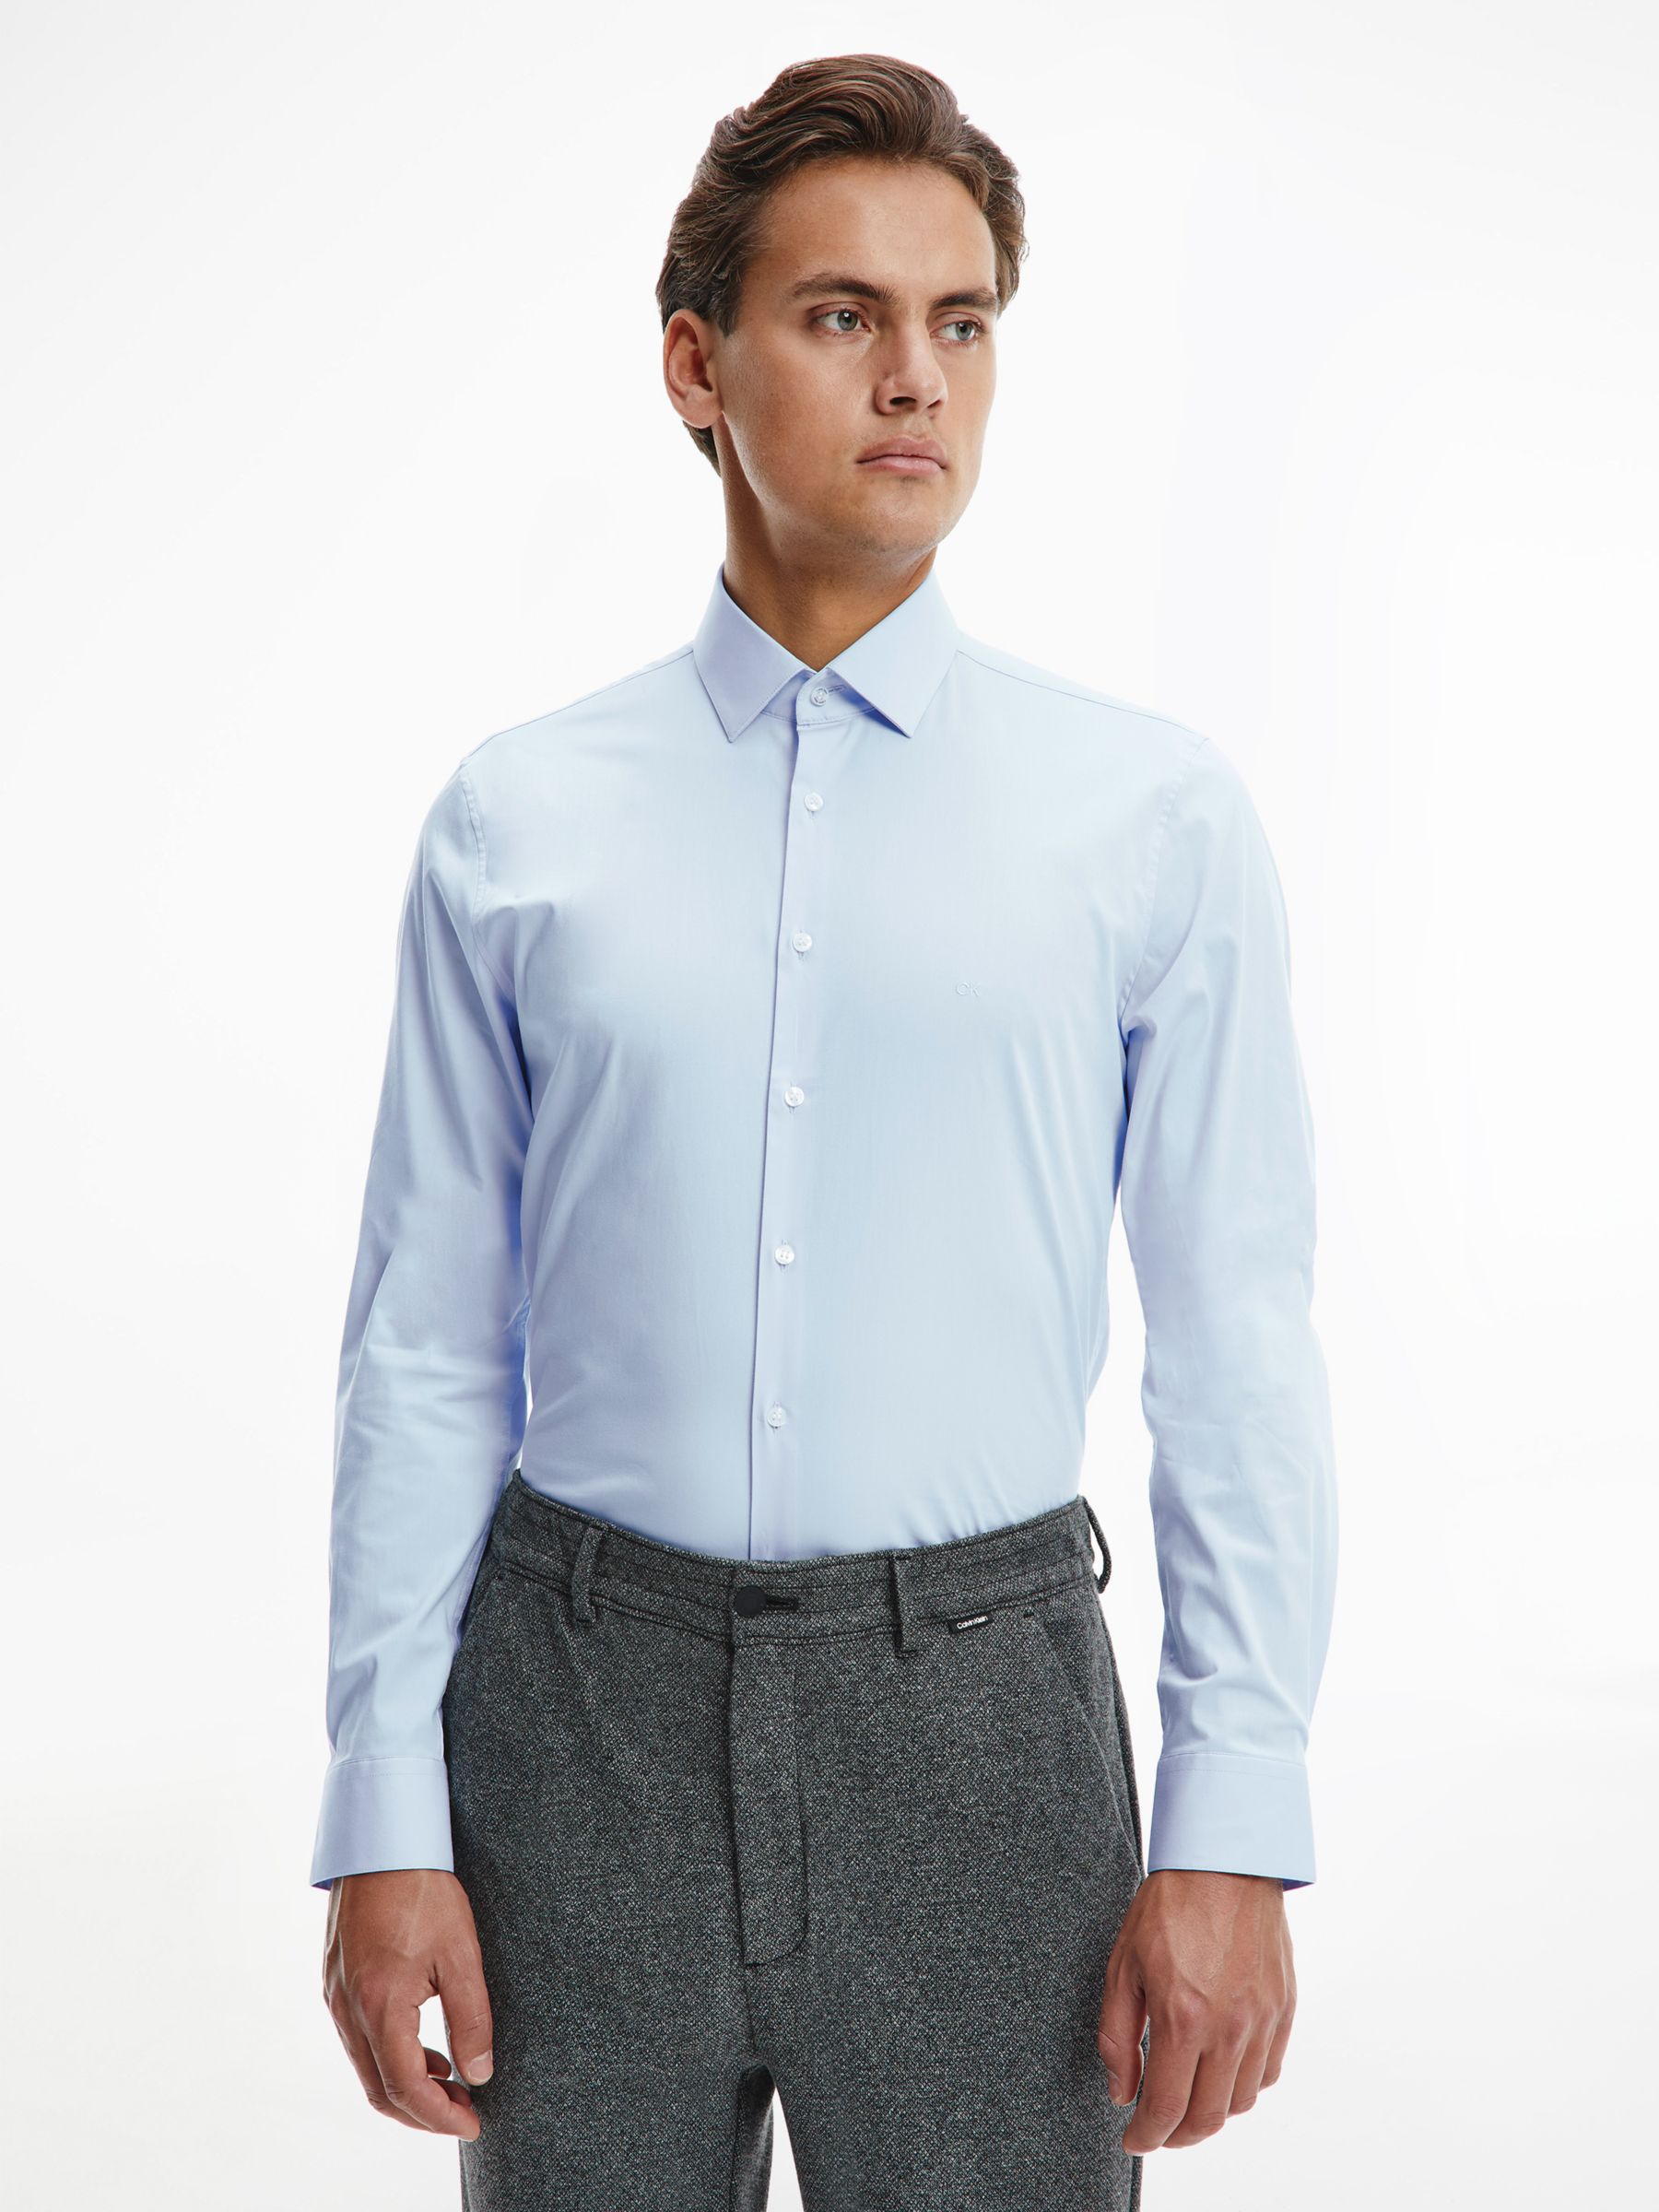 Calvin Klein Cotton Poplin Slim Fit Shirt, Calm Blue, 38R